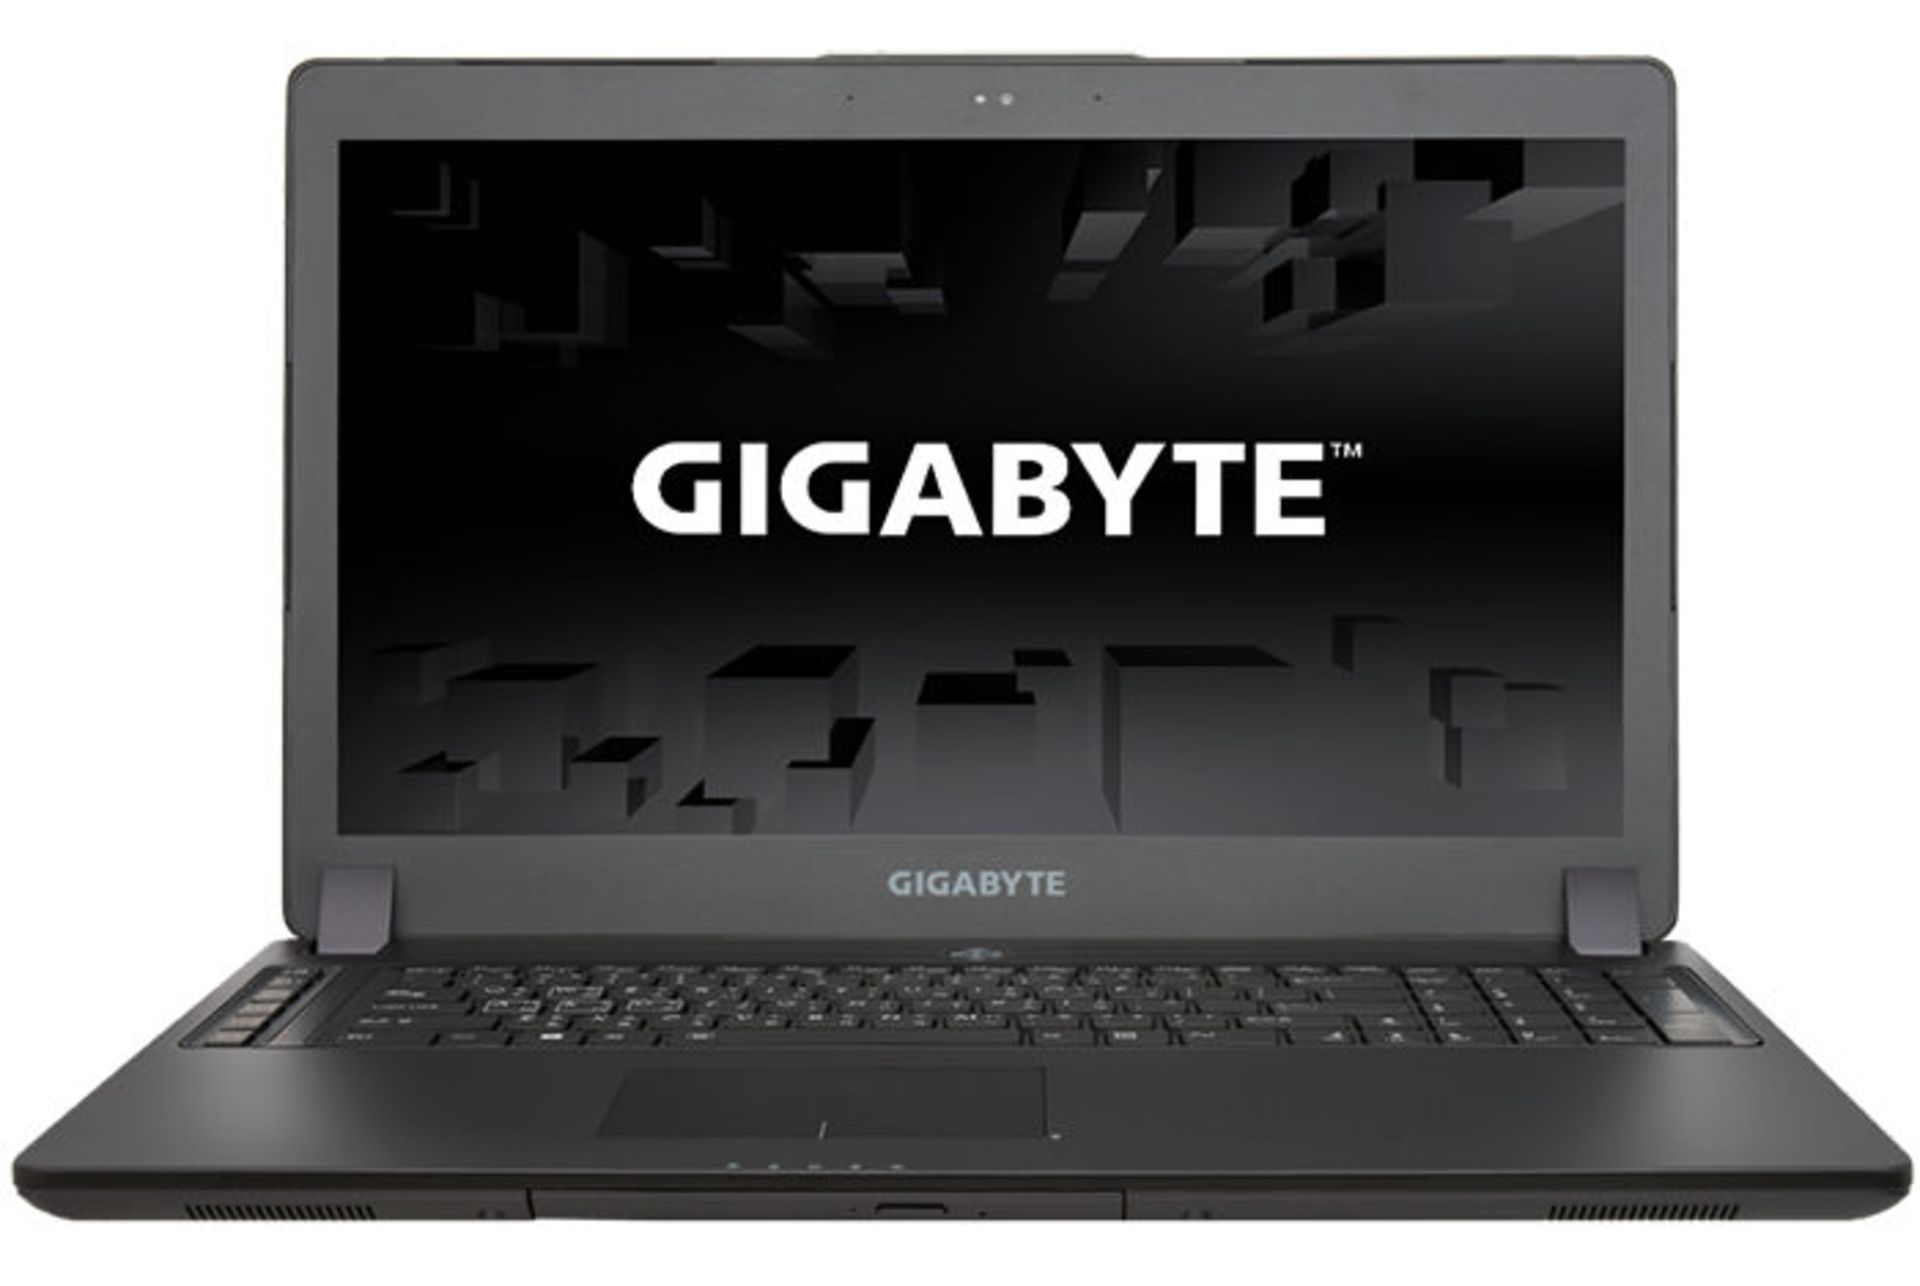 gigabyte-p37x-1